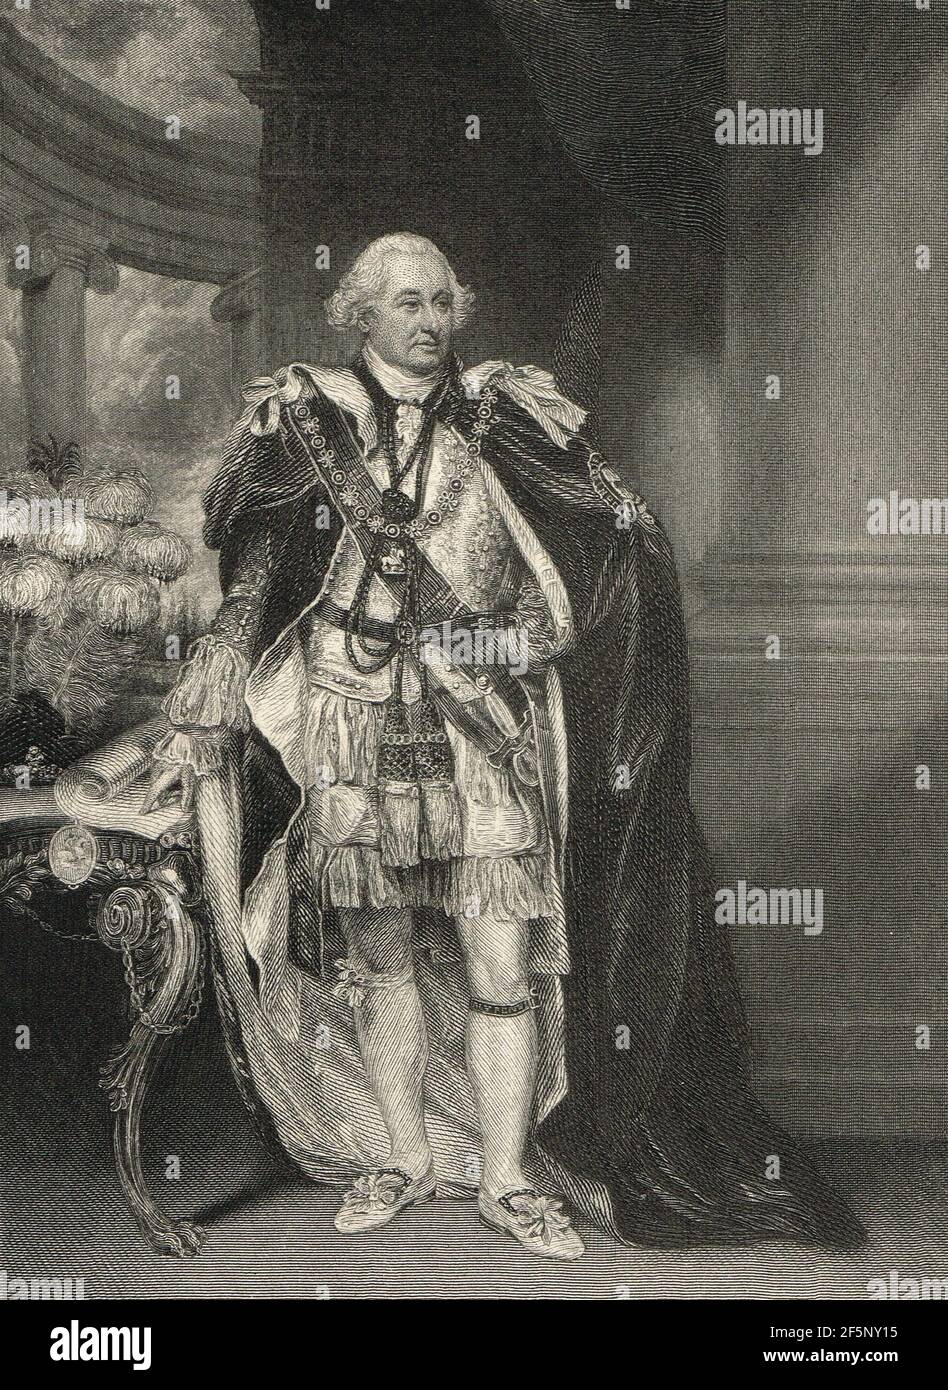 Charles Cornwallis, 1st Marquess Cornwallis, Lord Teniente y Comandante en Jefe de Irlanda, durante la rebelión irlandesa de 1798 Foto de stock